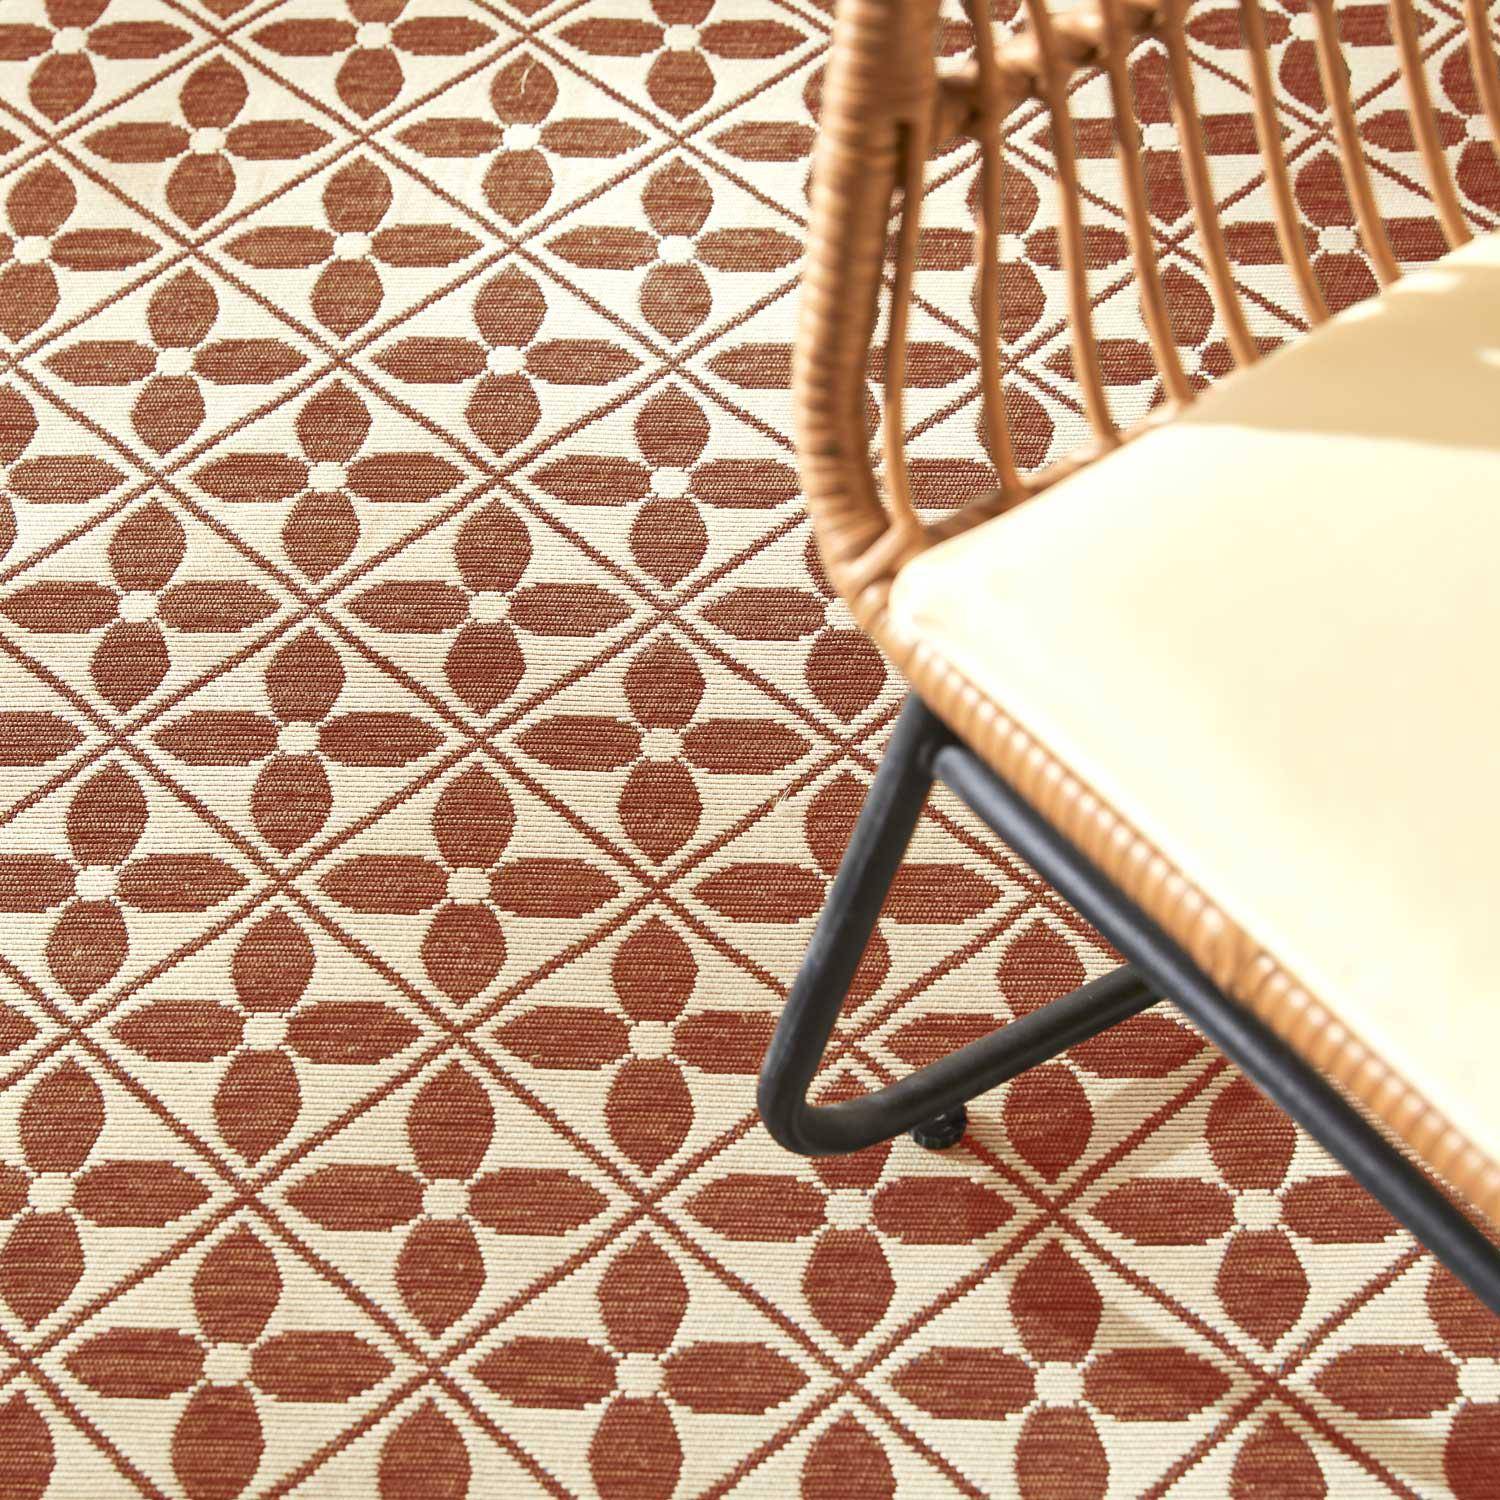 Outdoor rug - 160x230cm - tile print, rectangular, indoor/outdoor use - Terracotta Photo2